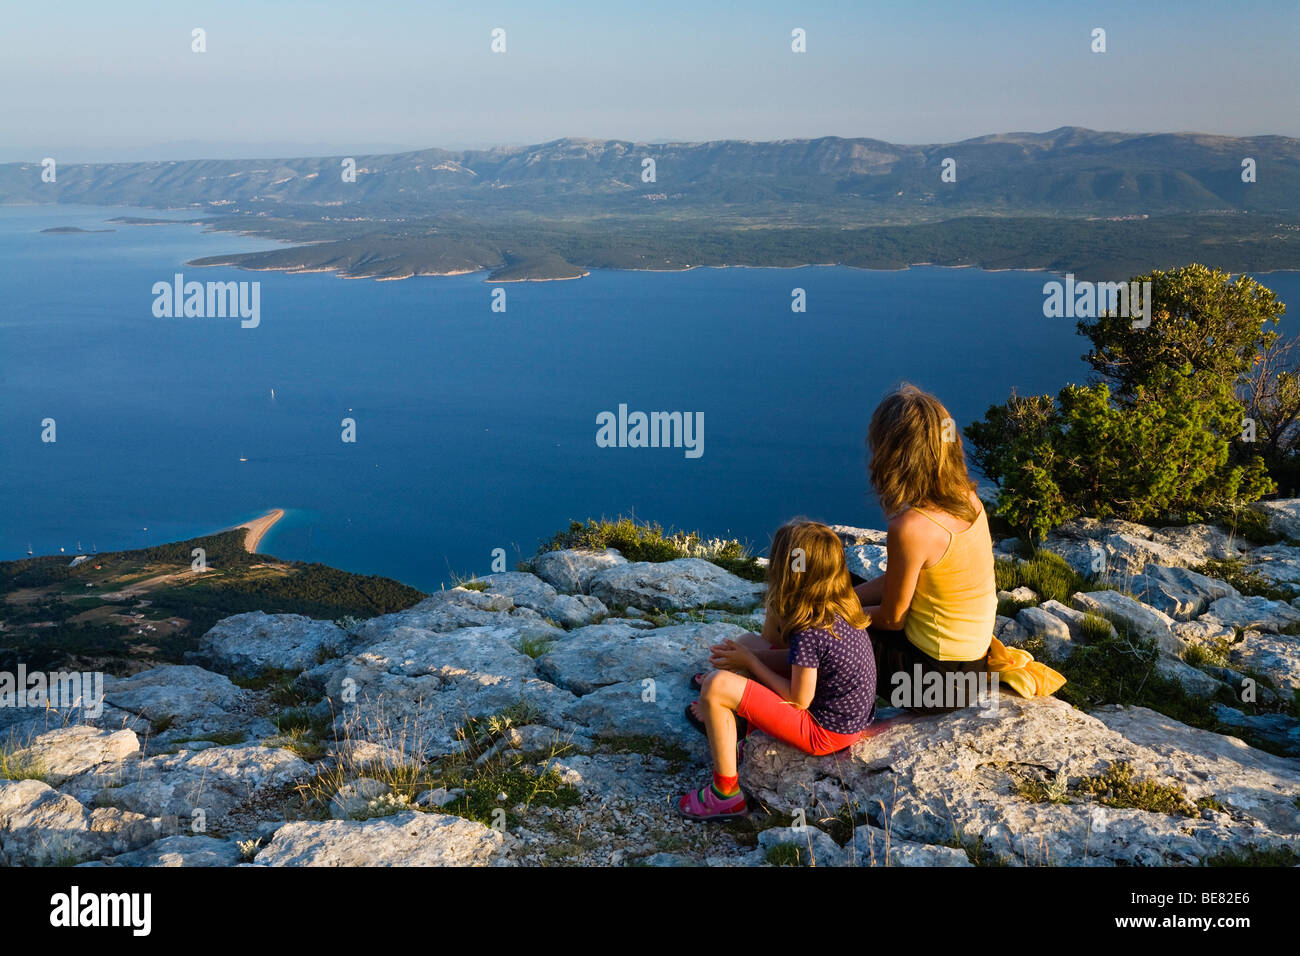 La madre e il bambino seduto sulle rocce nella luce del tramonto, Vidovica, Vidova Gora, Isola di Brac, Dalmazia, Croazia, Europa Foto Stock